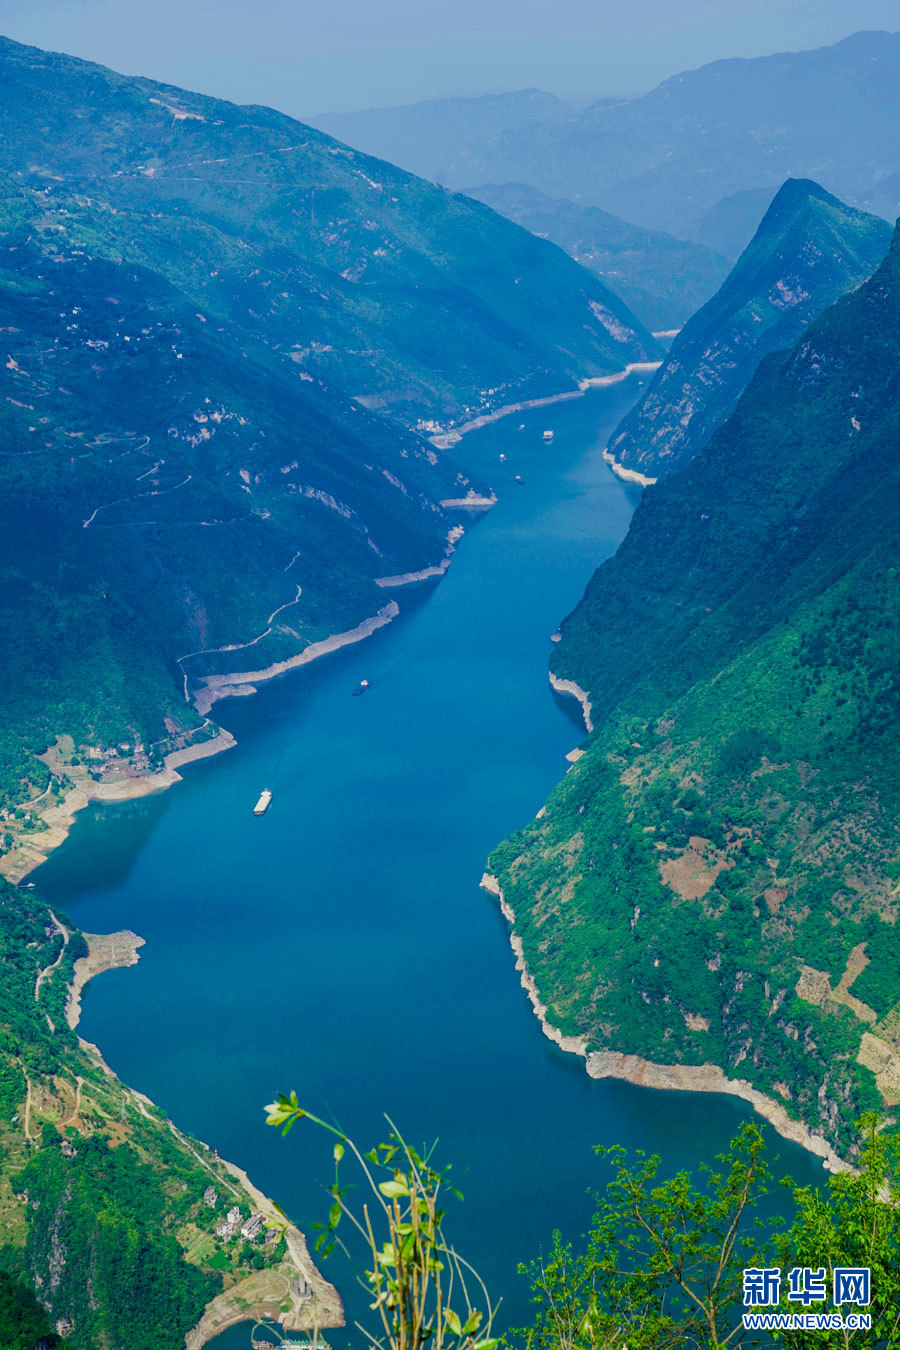 【"飞阅"中国】绝美山水 长江三峡巫峡口风景如画